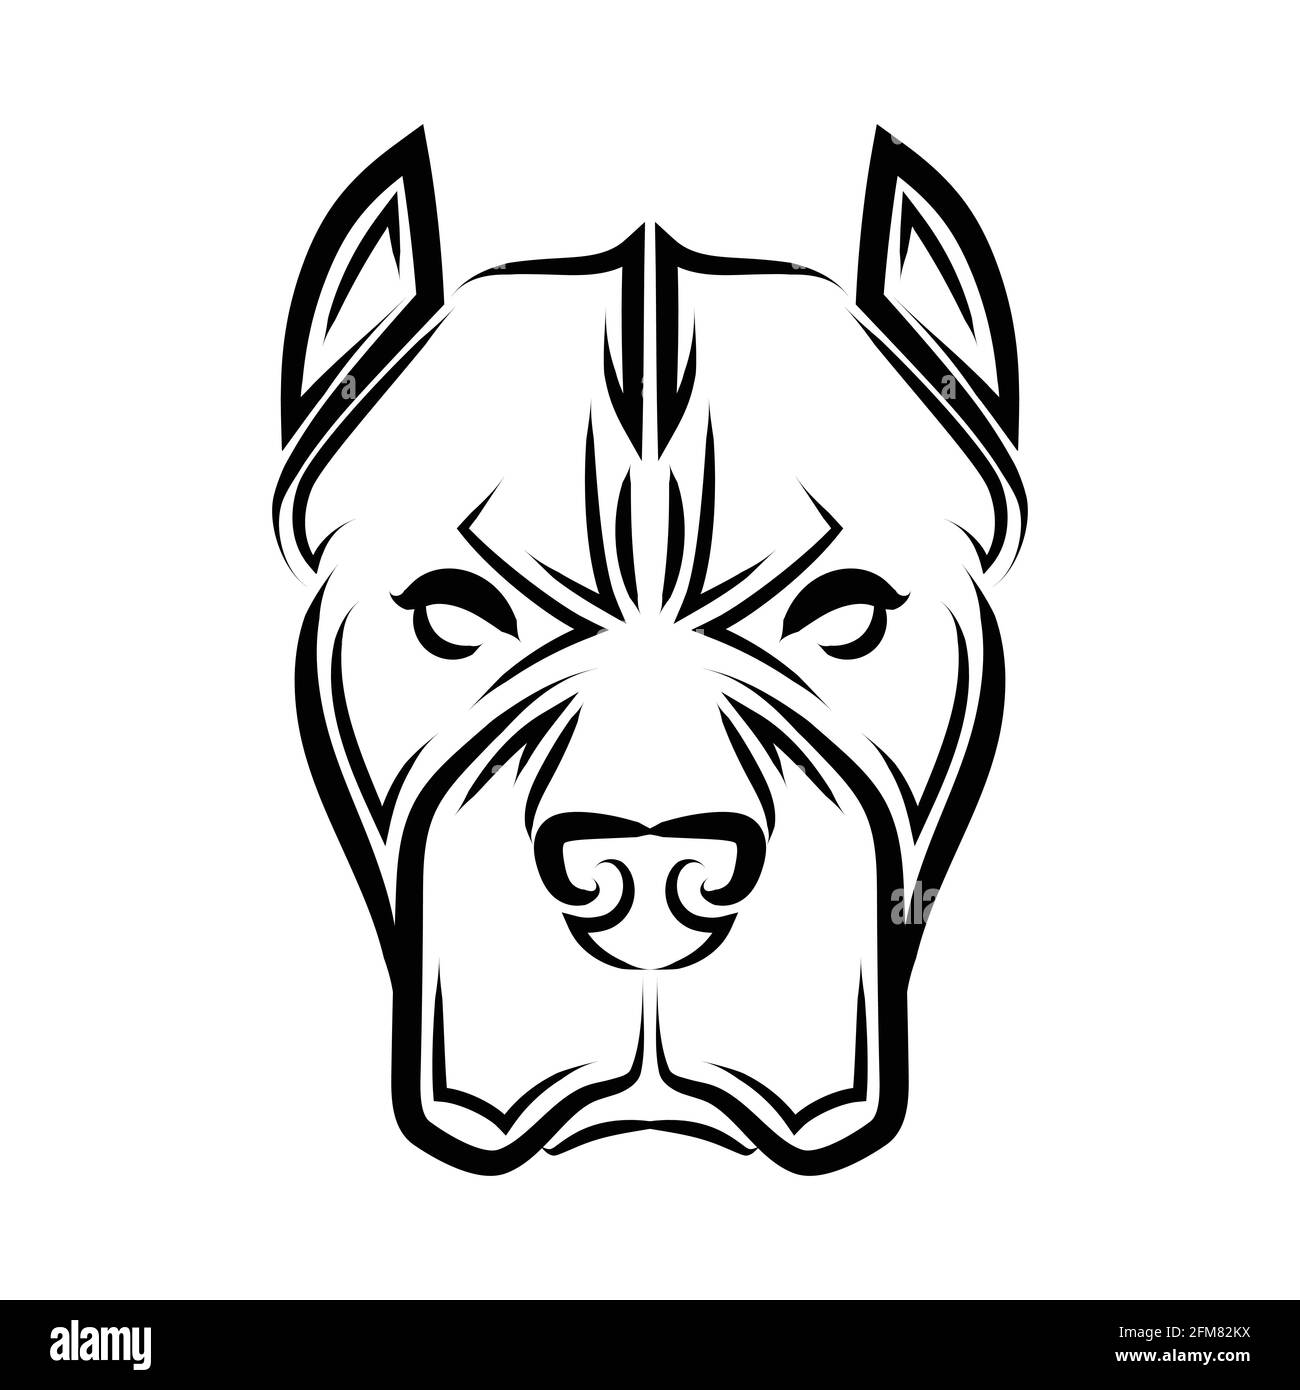 Illustration de la ligne noire et blanche de la tête de chien Pitbull. Bon usage pour symbole, mascotte, icône, avatar, tatouage, T-shirt, logo ou tout autre motif que vous voulez. Illustration de Vecteur